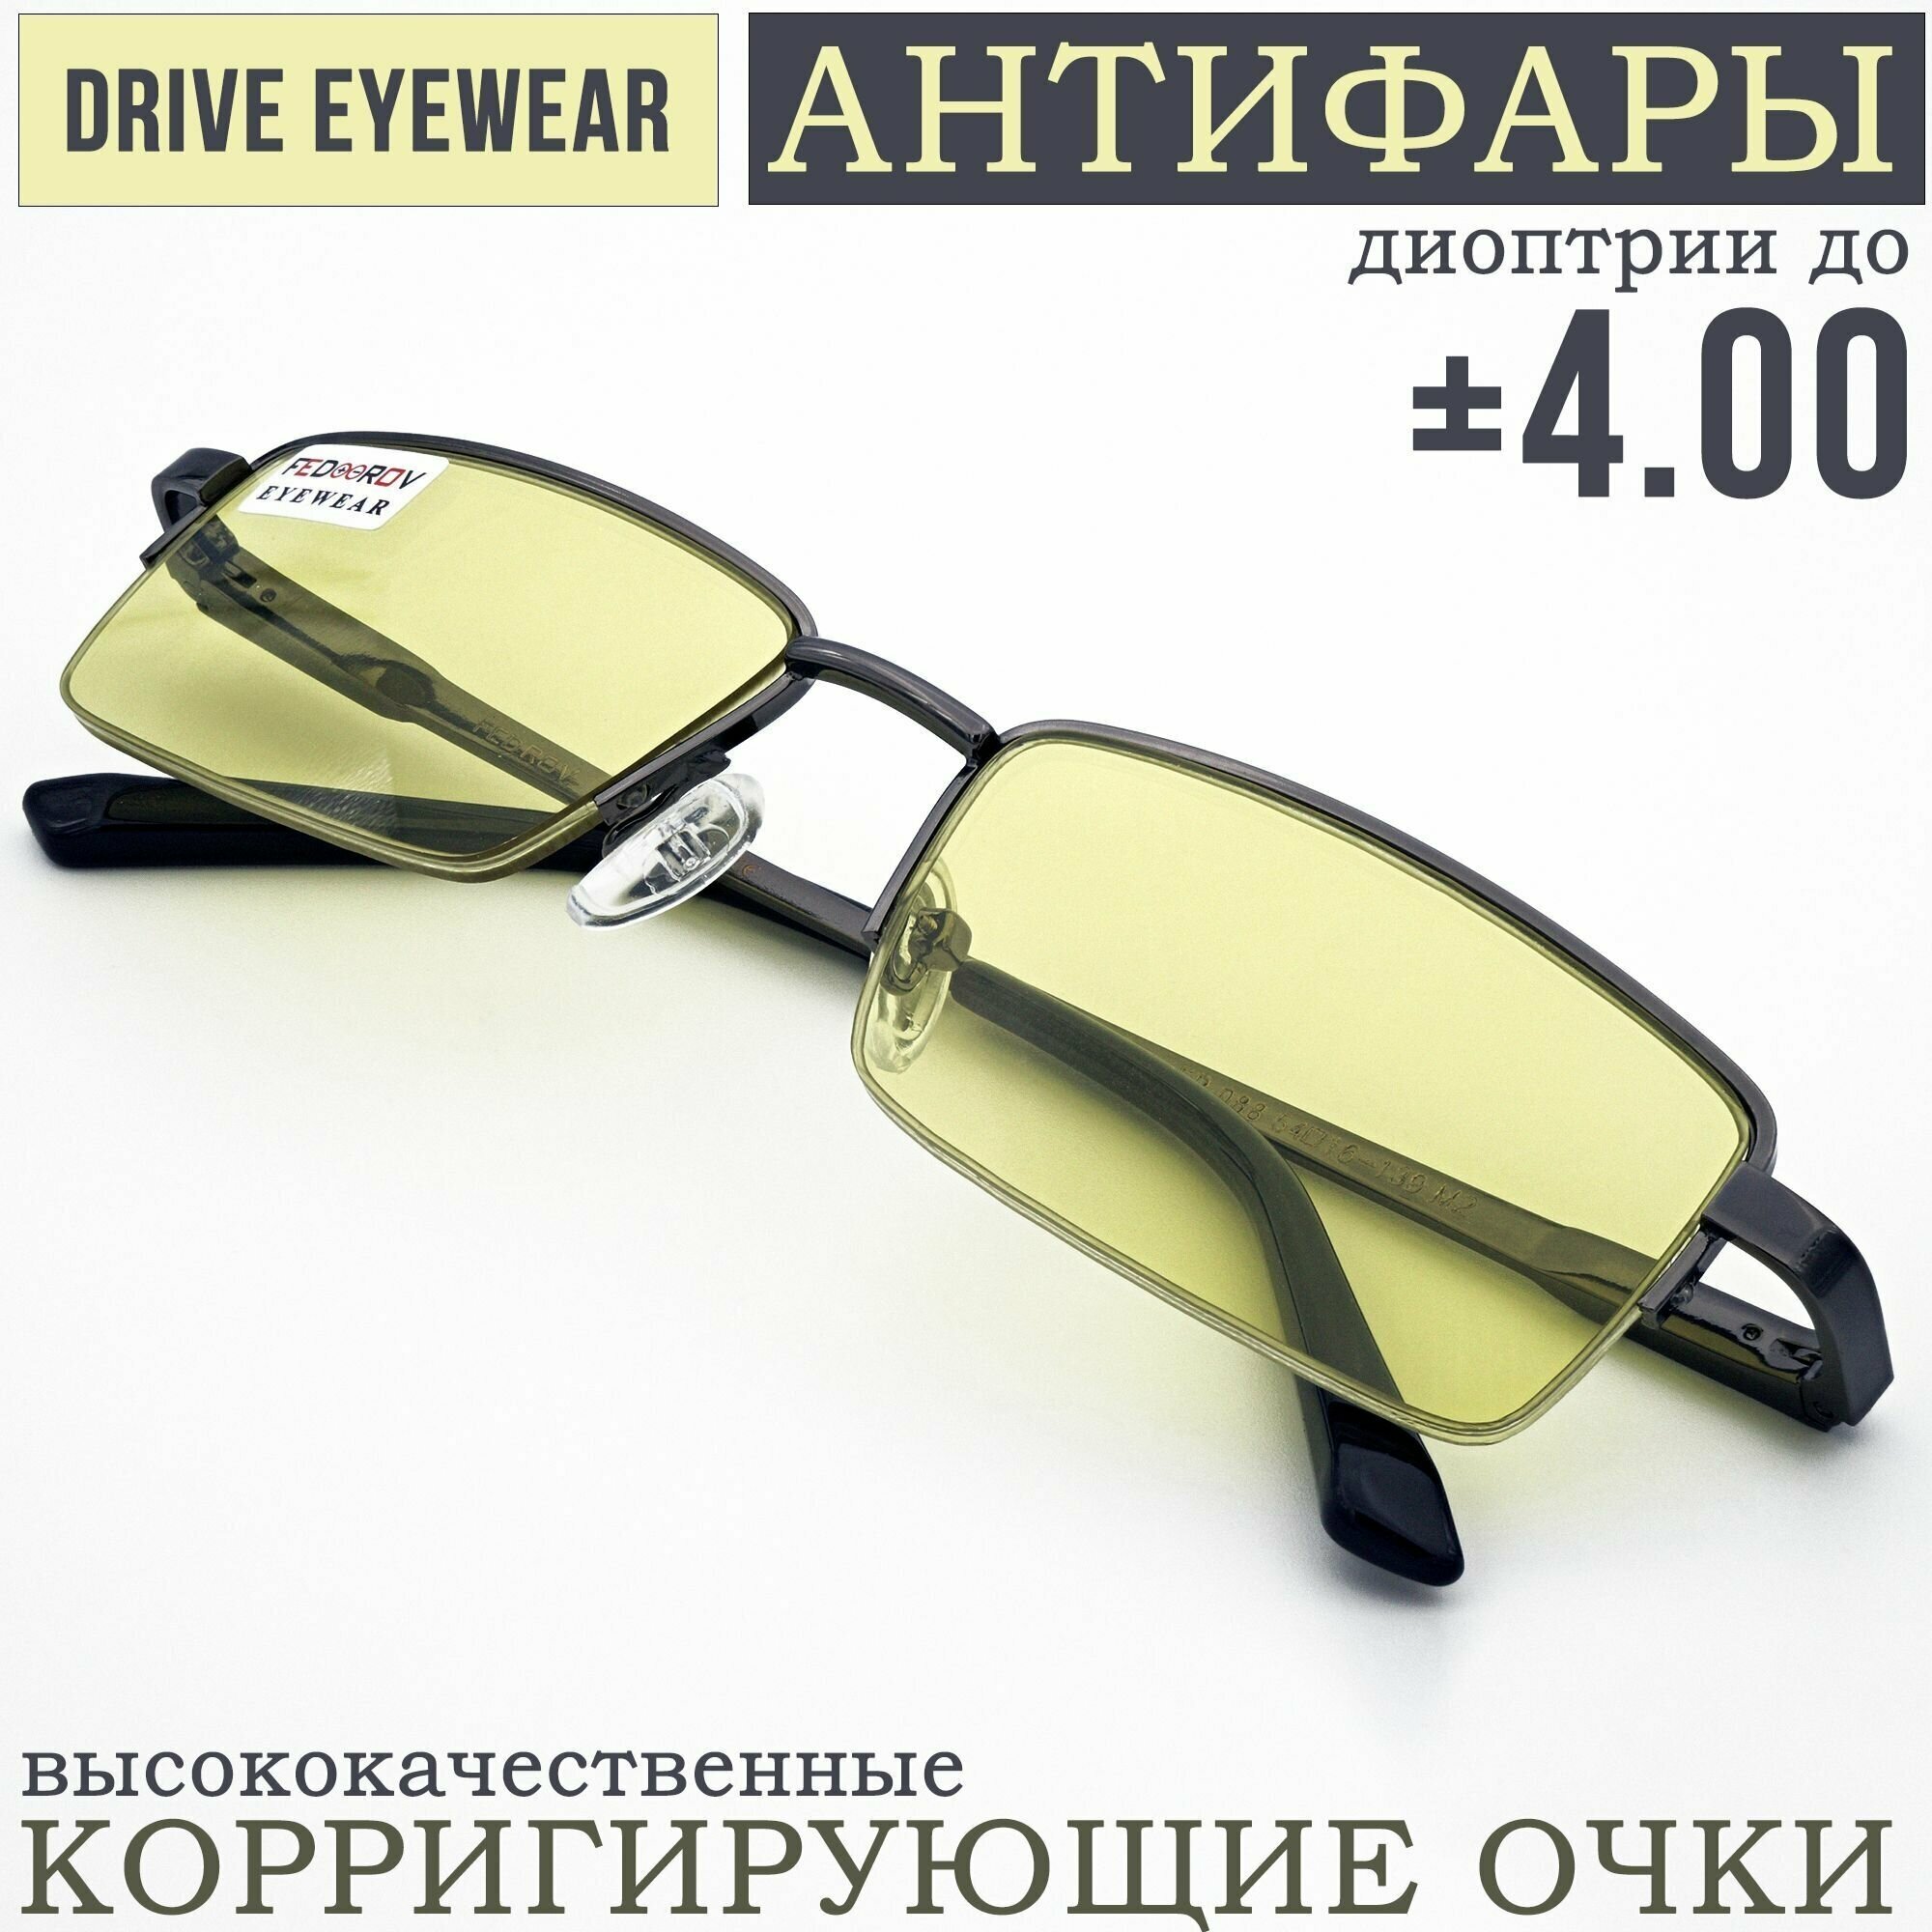 Готовые очки водительские Антифары с диоптриями -1,50